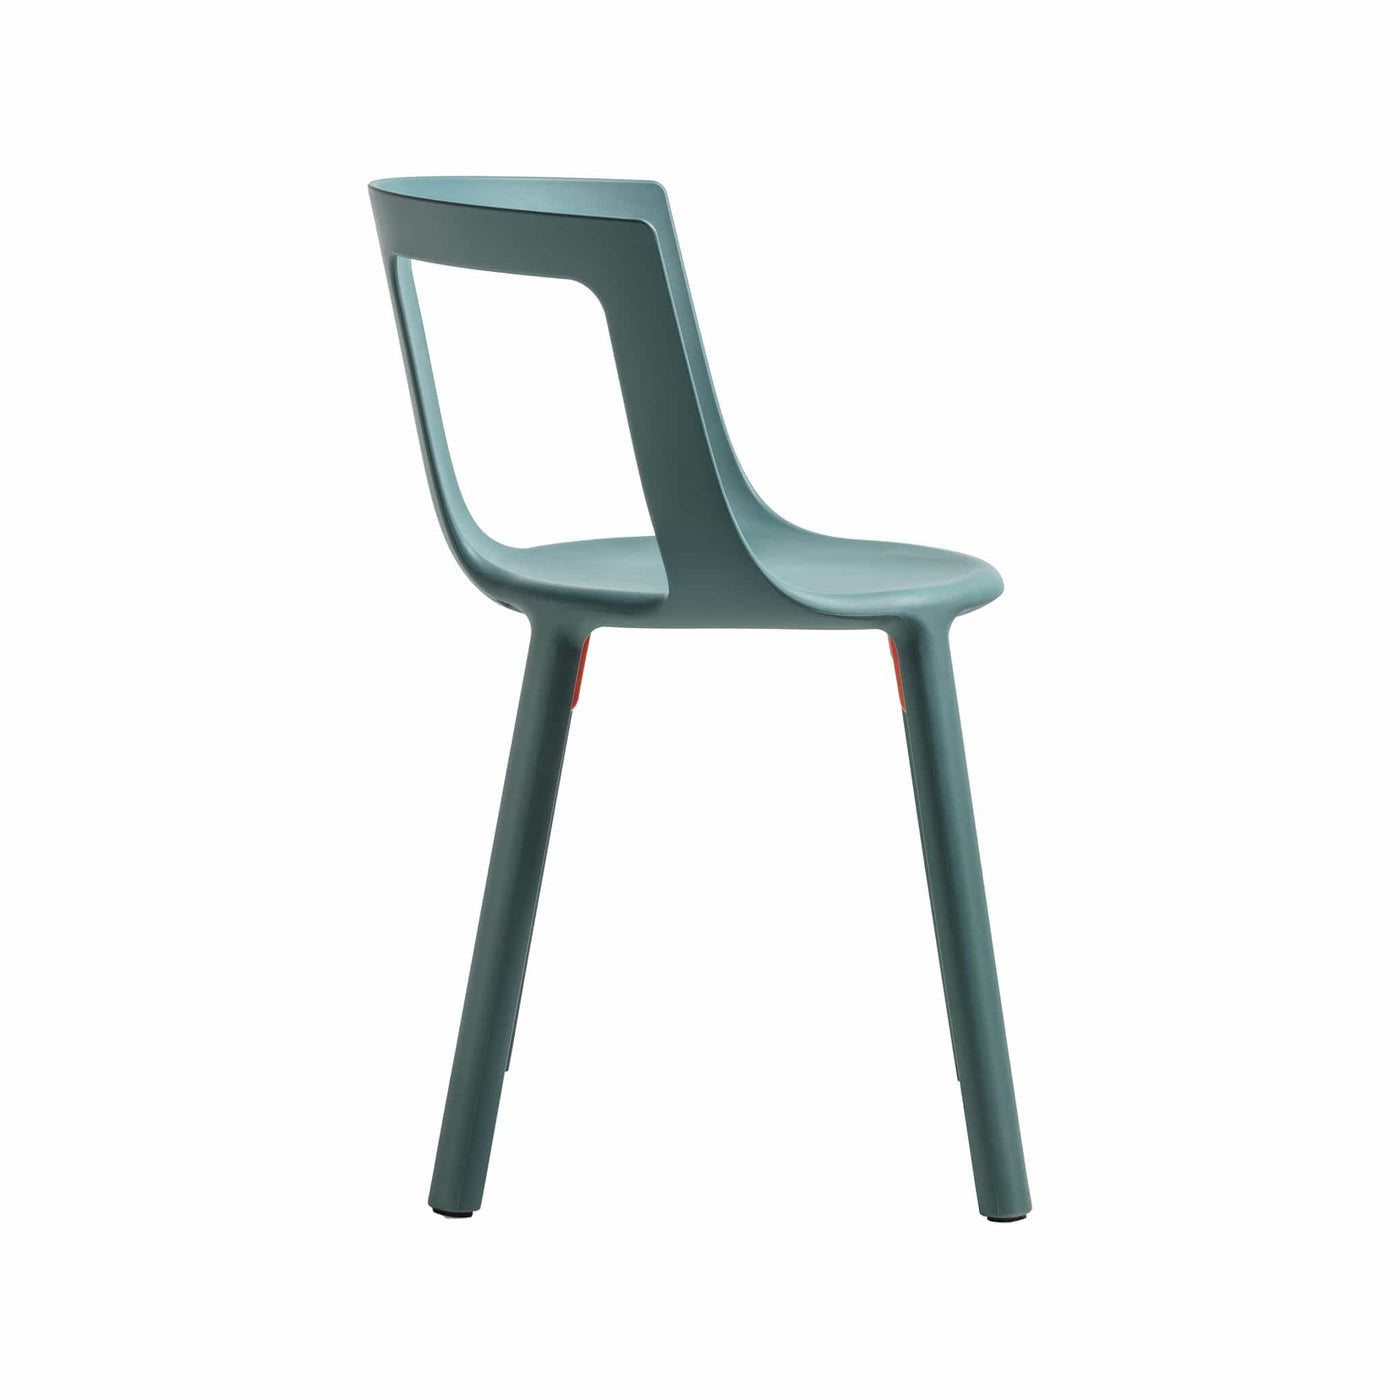 Explorez l'élégance et la praticité de la chaise FLA de TOOU, offrant un design lisse et minimaliste, parfait pour une utilisation dans les salles à manger, les bureaux ou les espaces de réception.